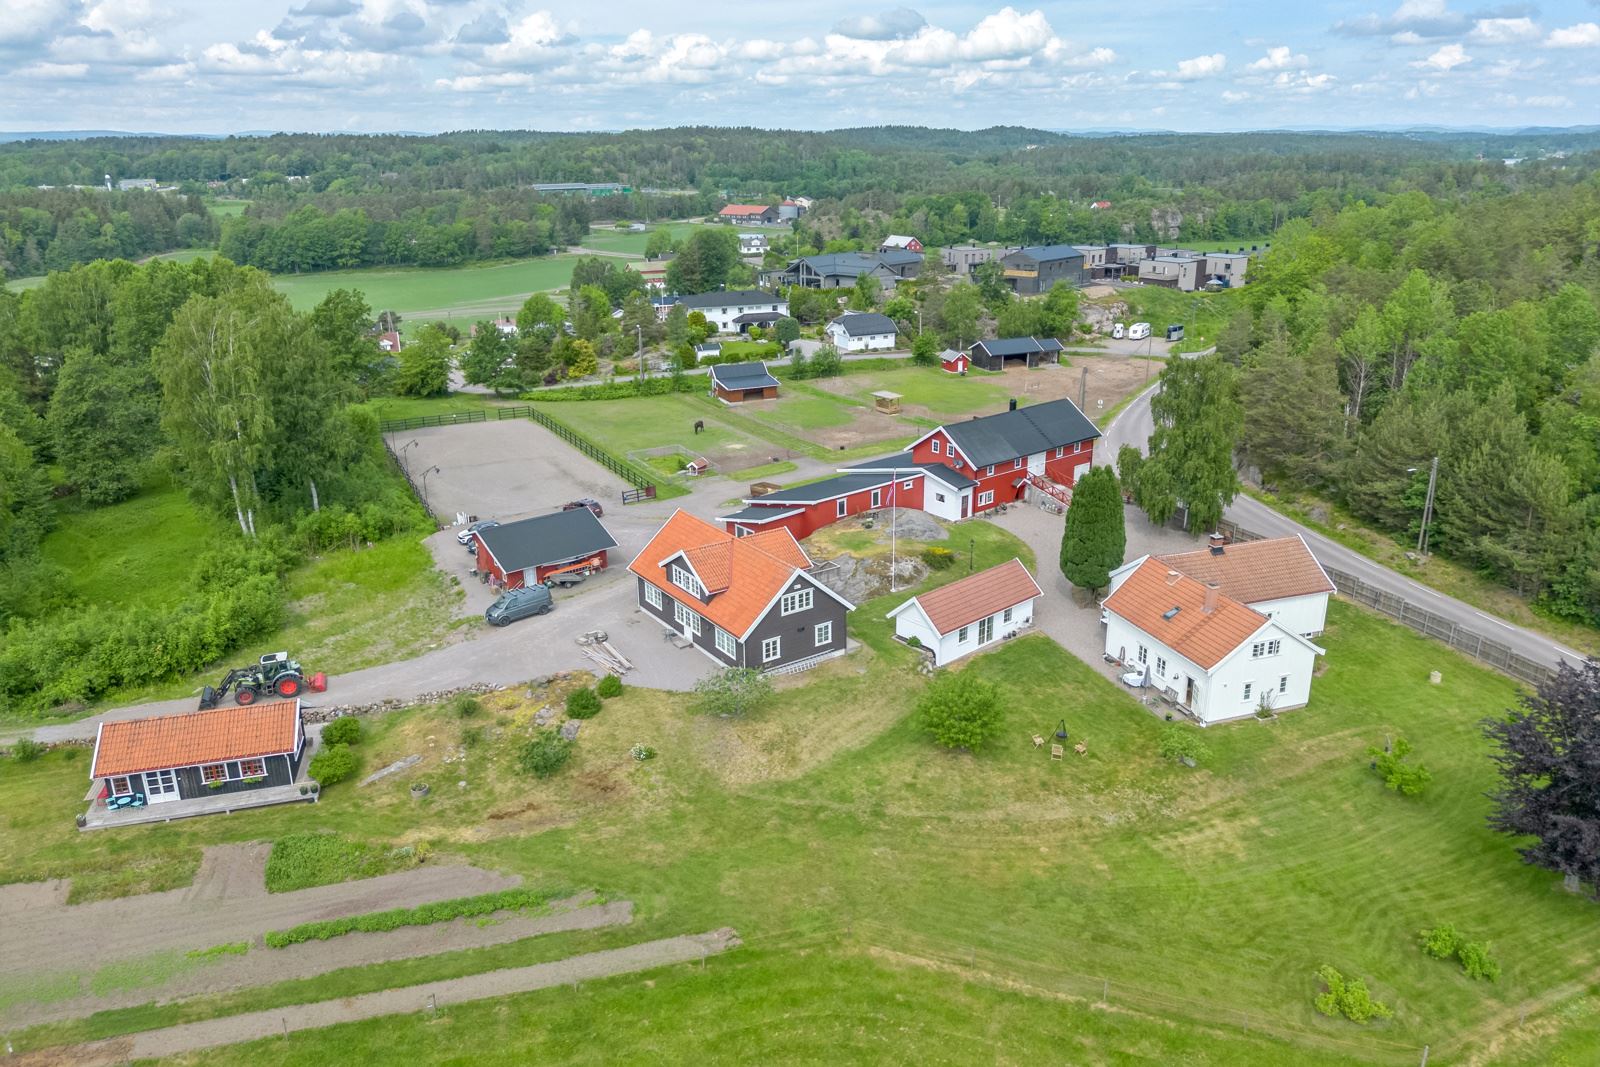 Vakker gård med et flott hovedhus m/sidefløy, leilighetsbygg m/4 leil., hesteanlegg med staller, ridebane mm.